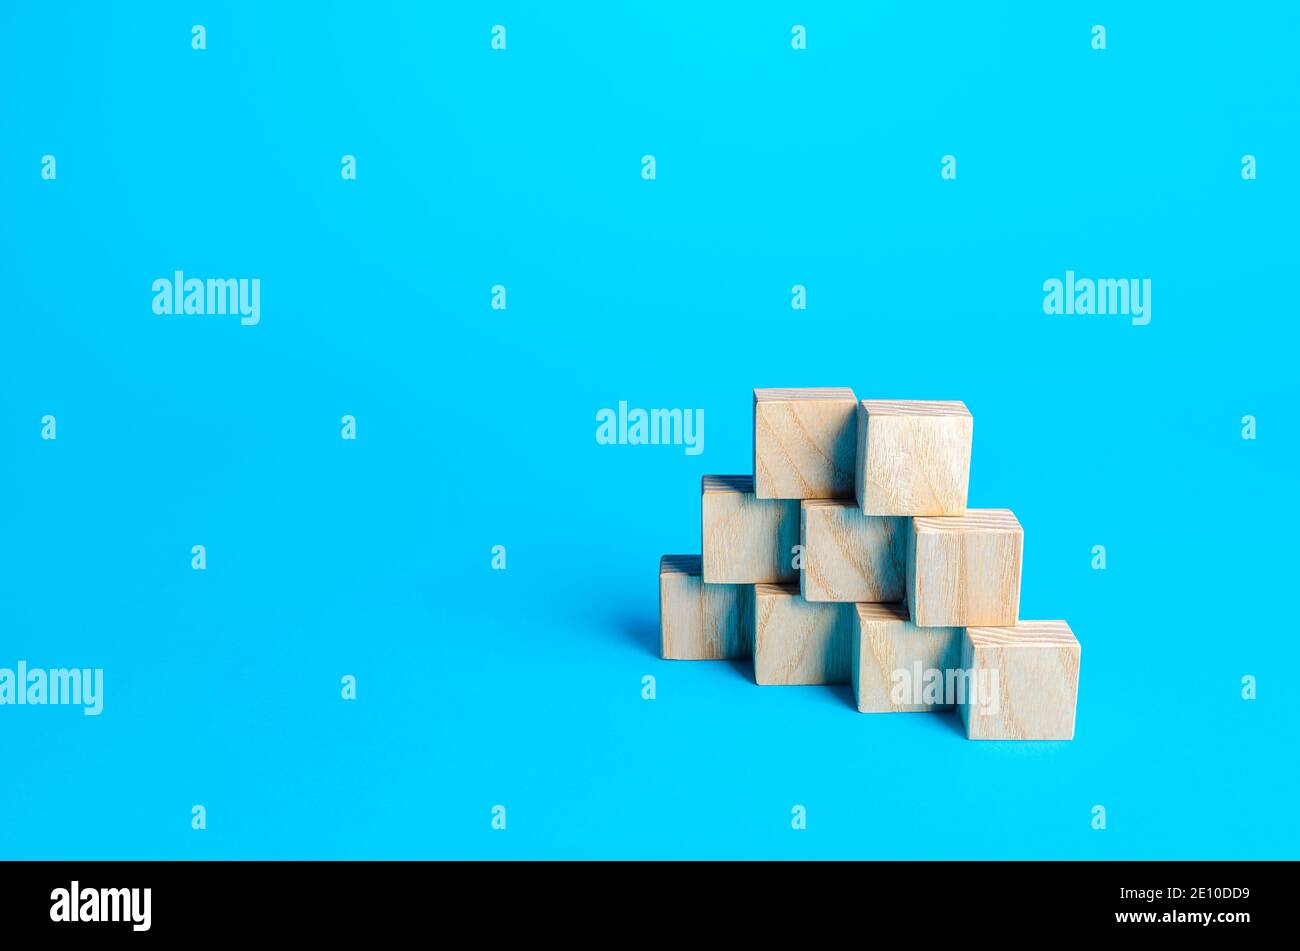 Holzblöcke Pyramide auf einem blauen Hintergrund. Folie für Präsentation. Platz kopieren, für Text platzieren. Schritte. Minimalismus. Einfache Formen Geometrie. Stockfoto